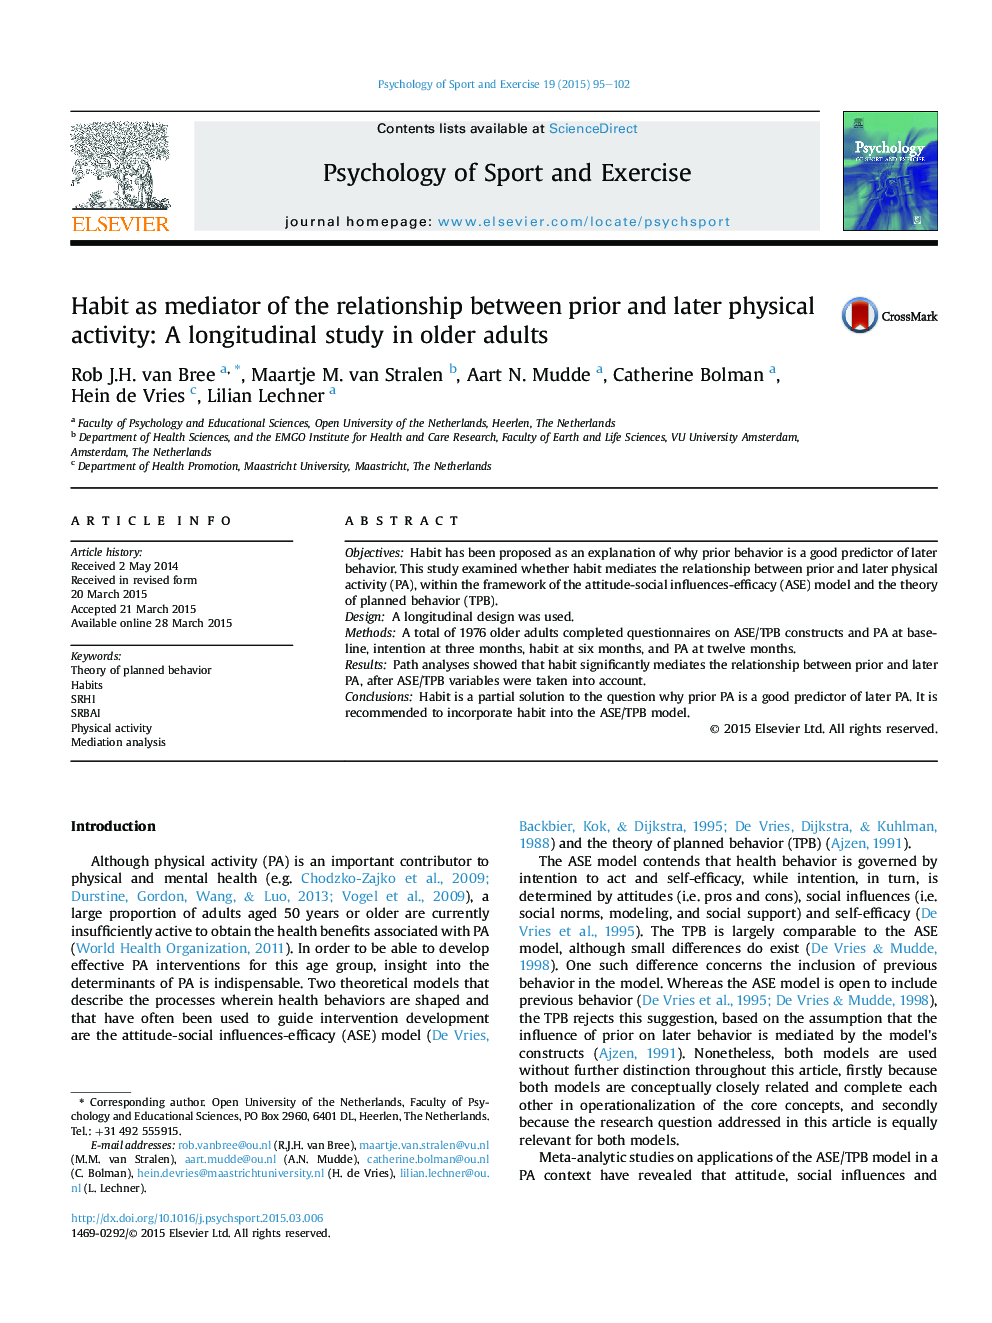 عادت به عنوان واسطه ارتباط بین فعالیت بدنی قبل و بعد: یک مطالعه طولی در بزرگسالان سالمند